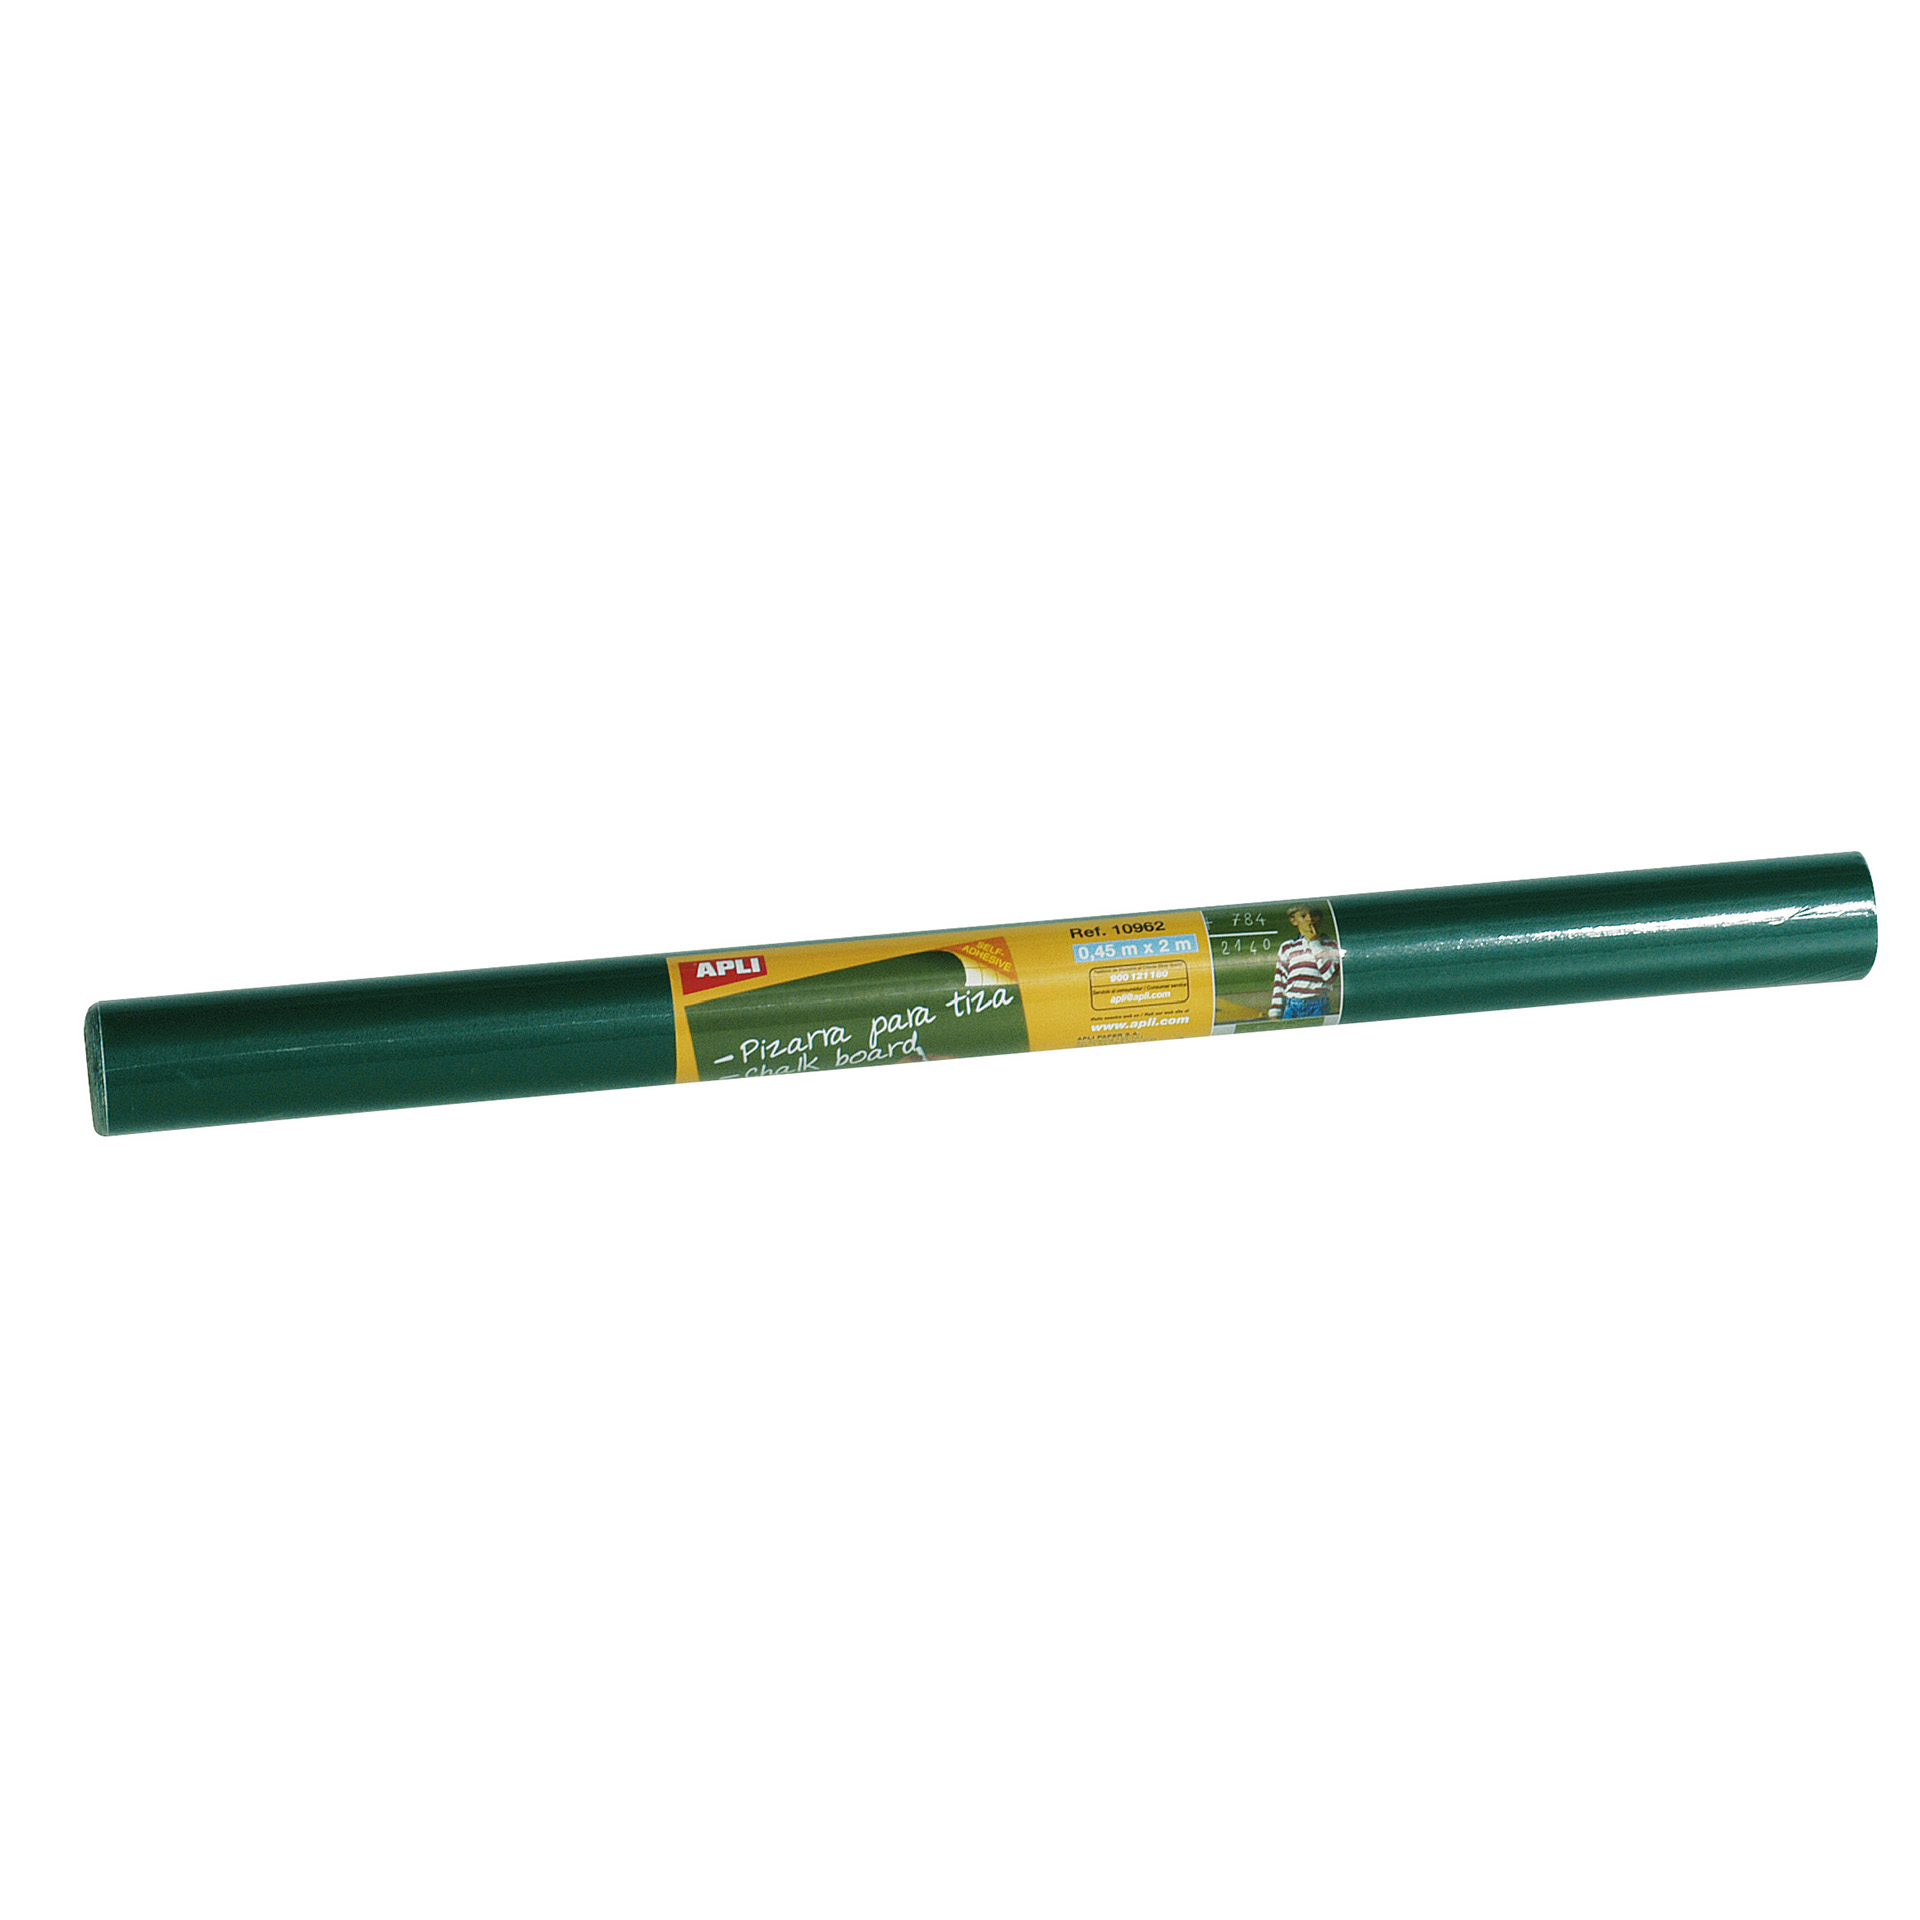 Apli Rollo de Pizarra Verde Adhesivo Reposicionable - Tamao 0.45x2m - Grosor 210m - Se Corta Facilmente - Apta para Superficies Lisas y Solidas - Facil de Limpiar - Color Verde